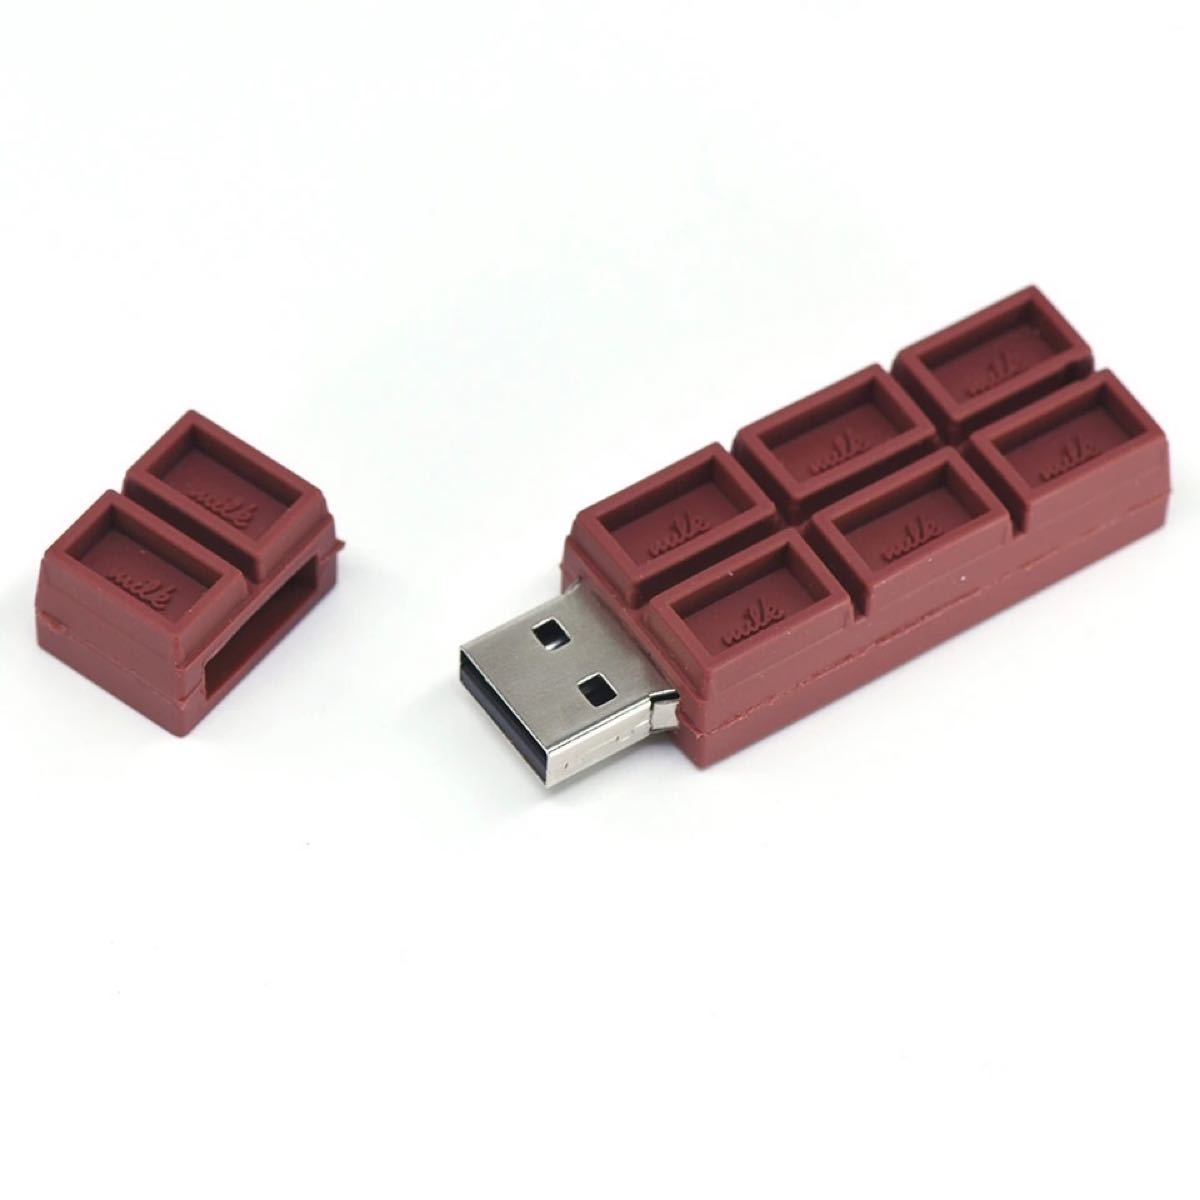 チョコレート型 USBメモリ 32GB×2 64GB×5